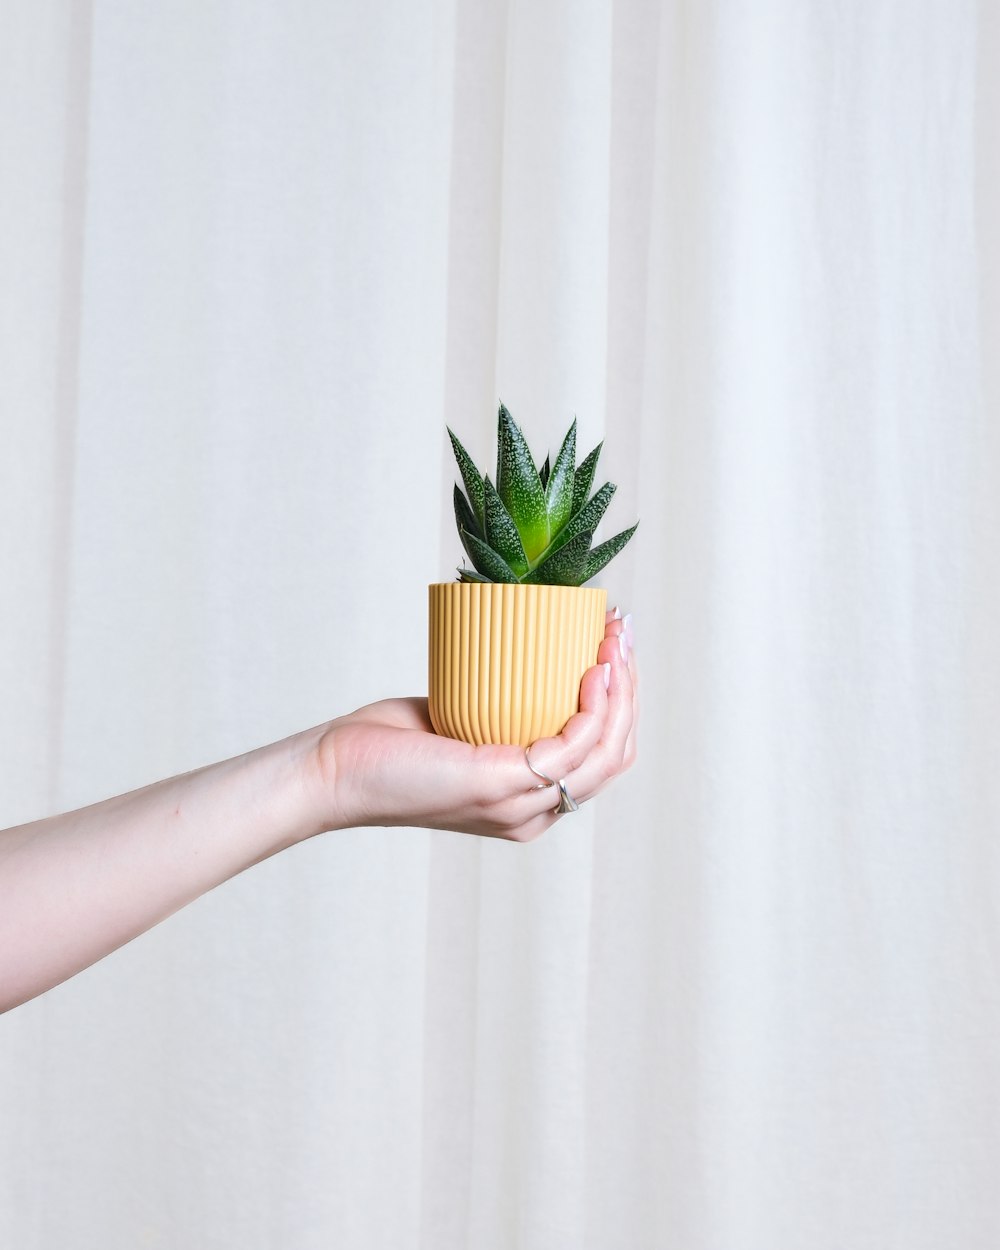 une personne tenant une plante en pot dans sa main